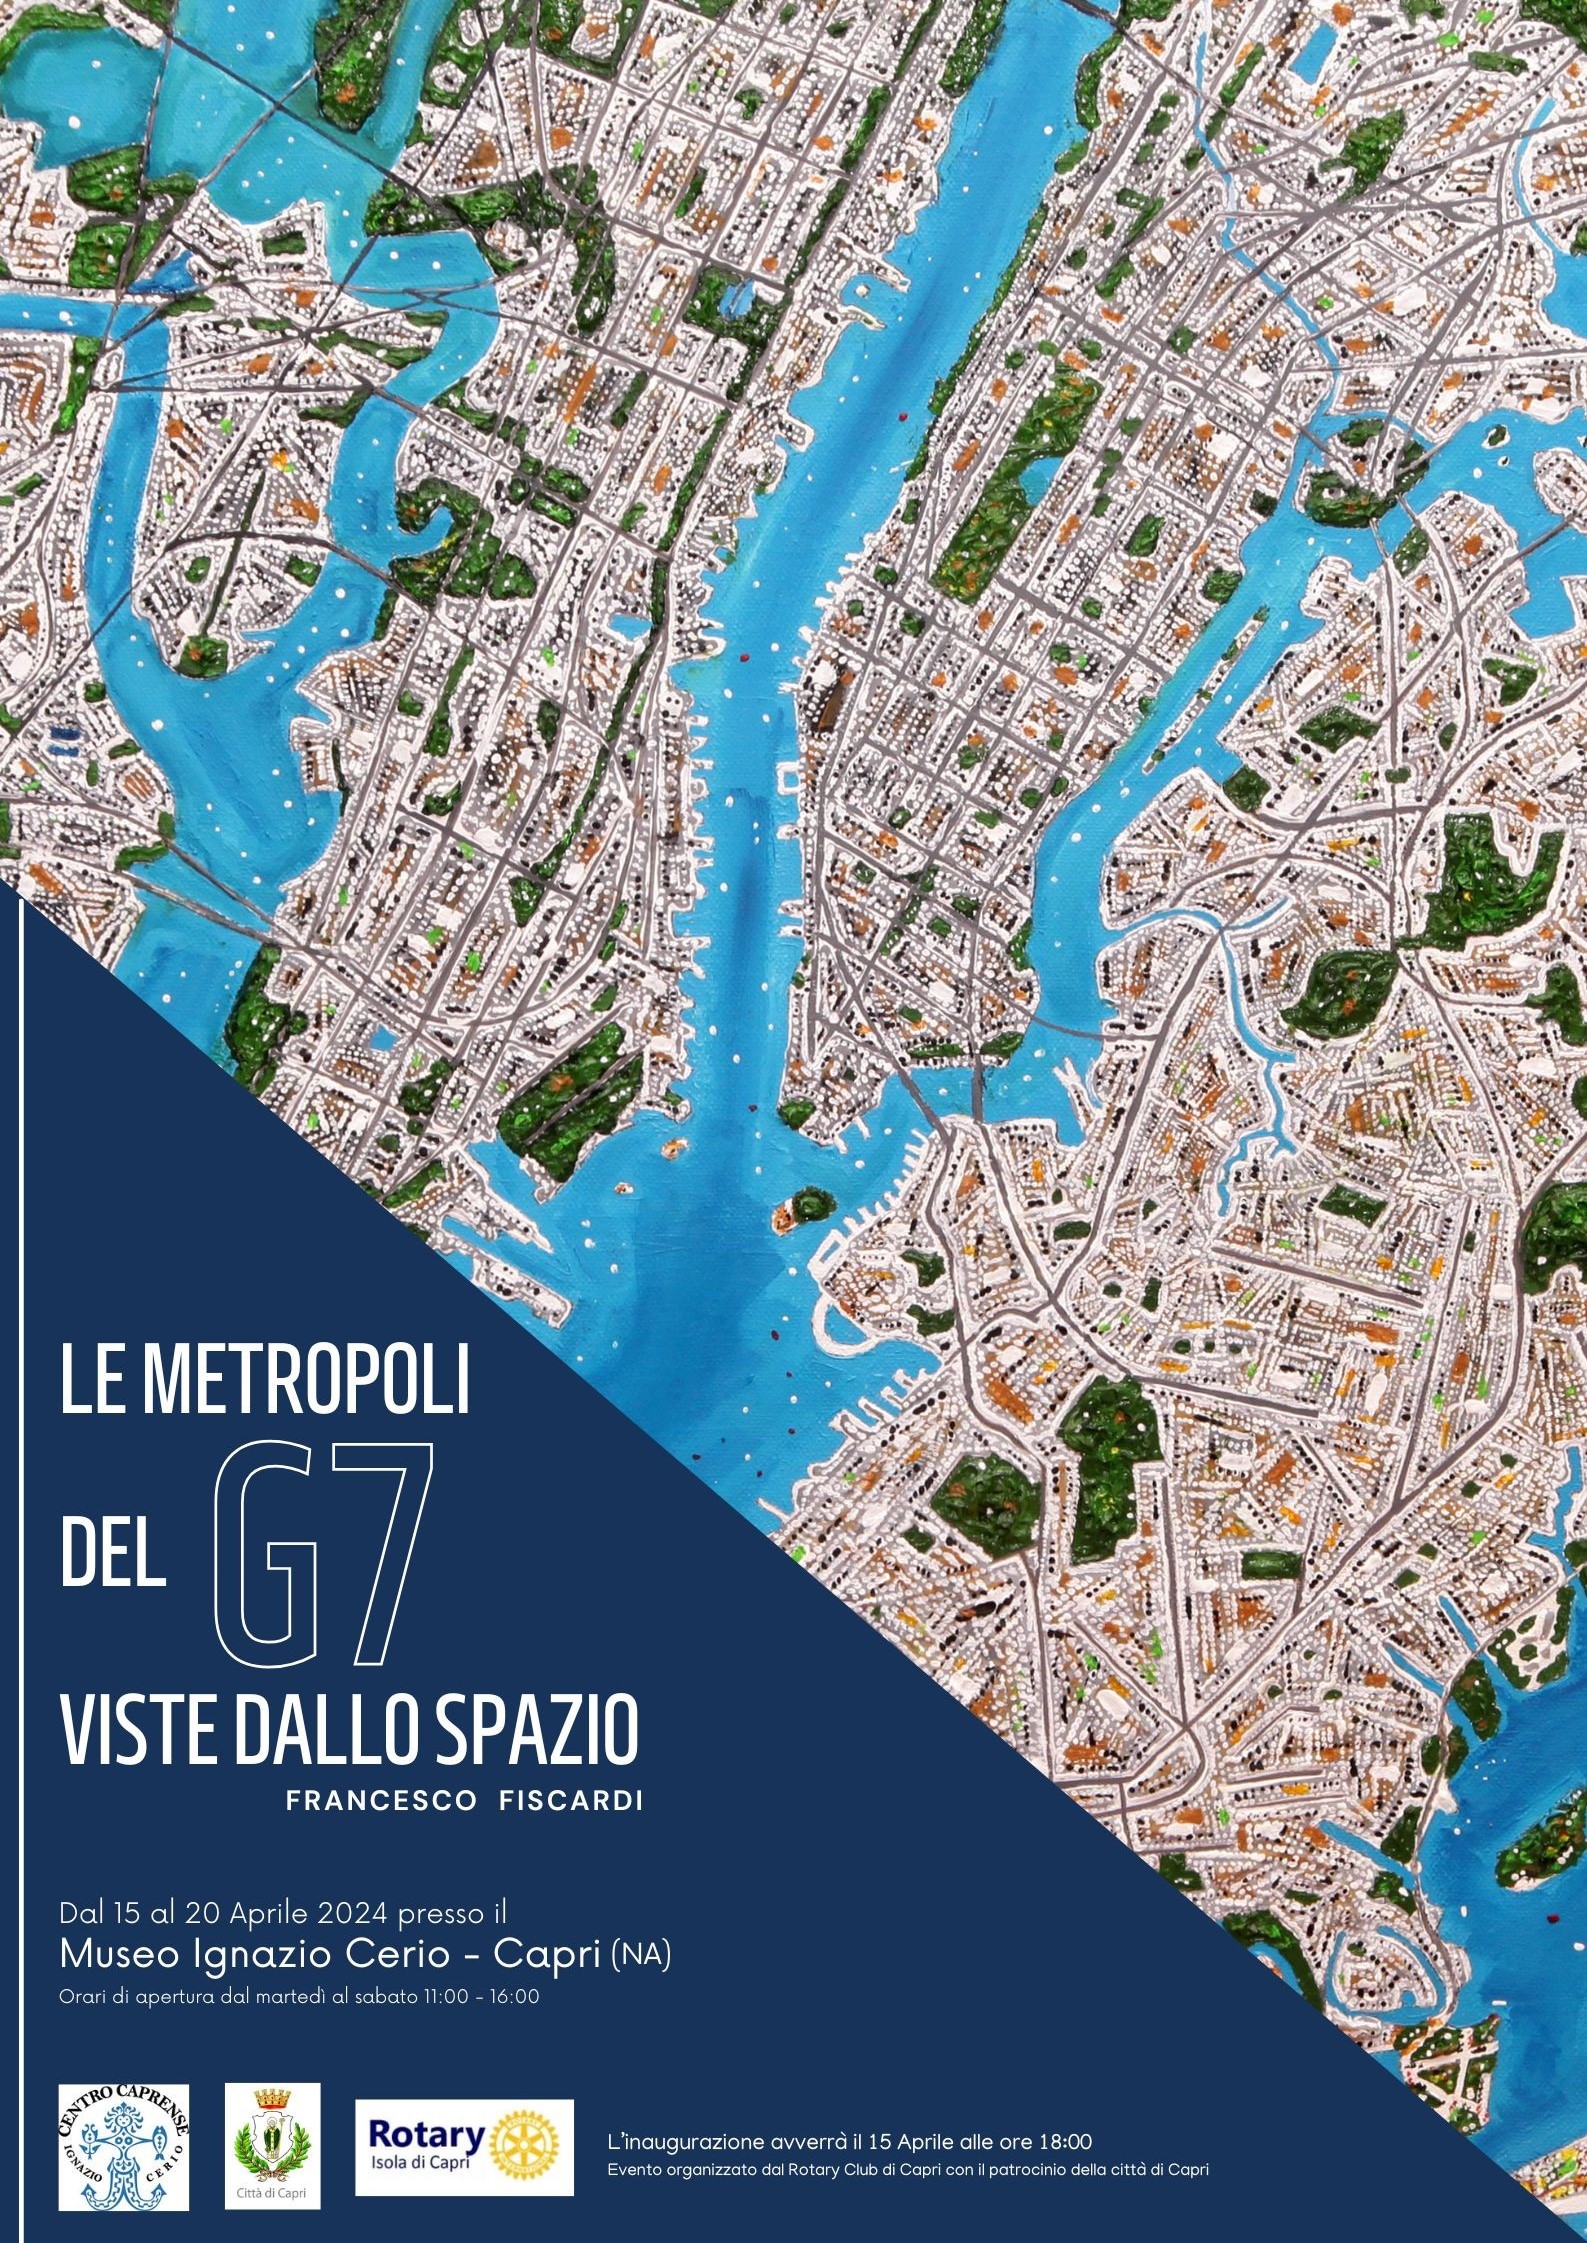 Le metropoli del G7 viste dallo spazio: a Capri la mostra dell’artista Francesco Fiscardi